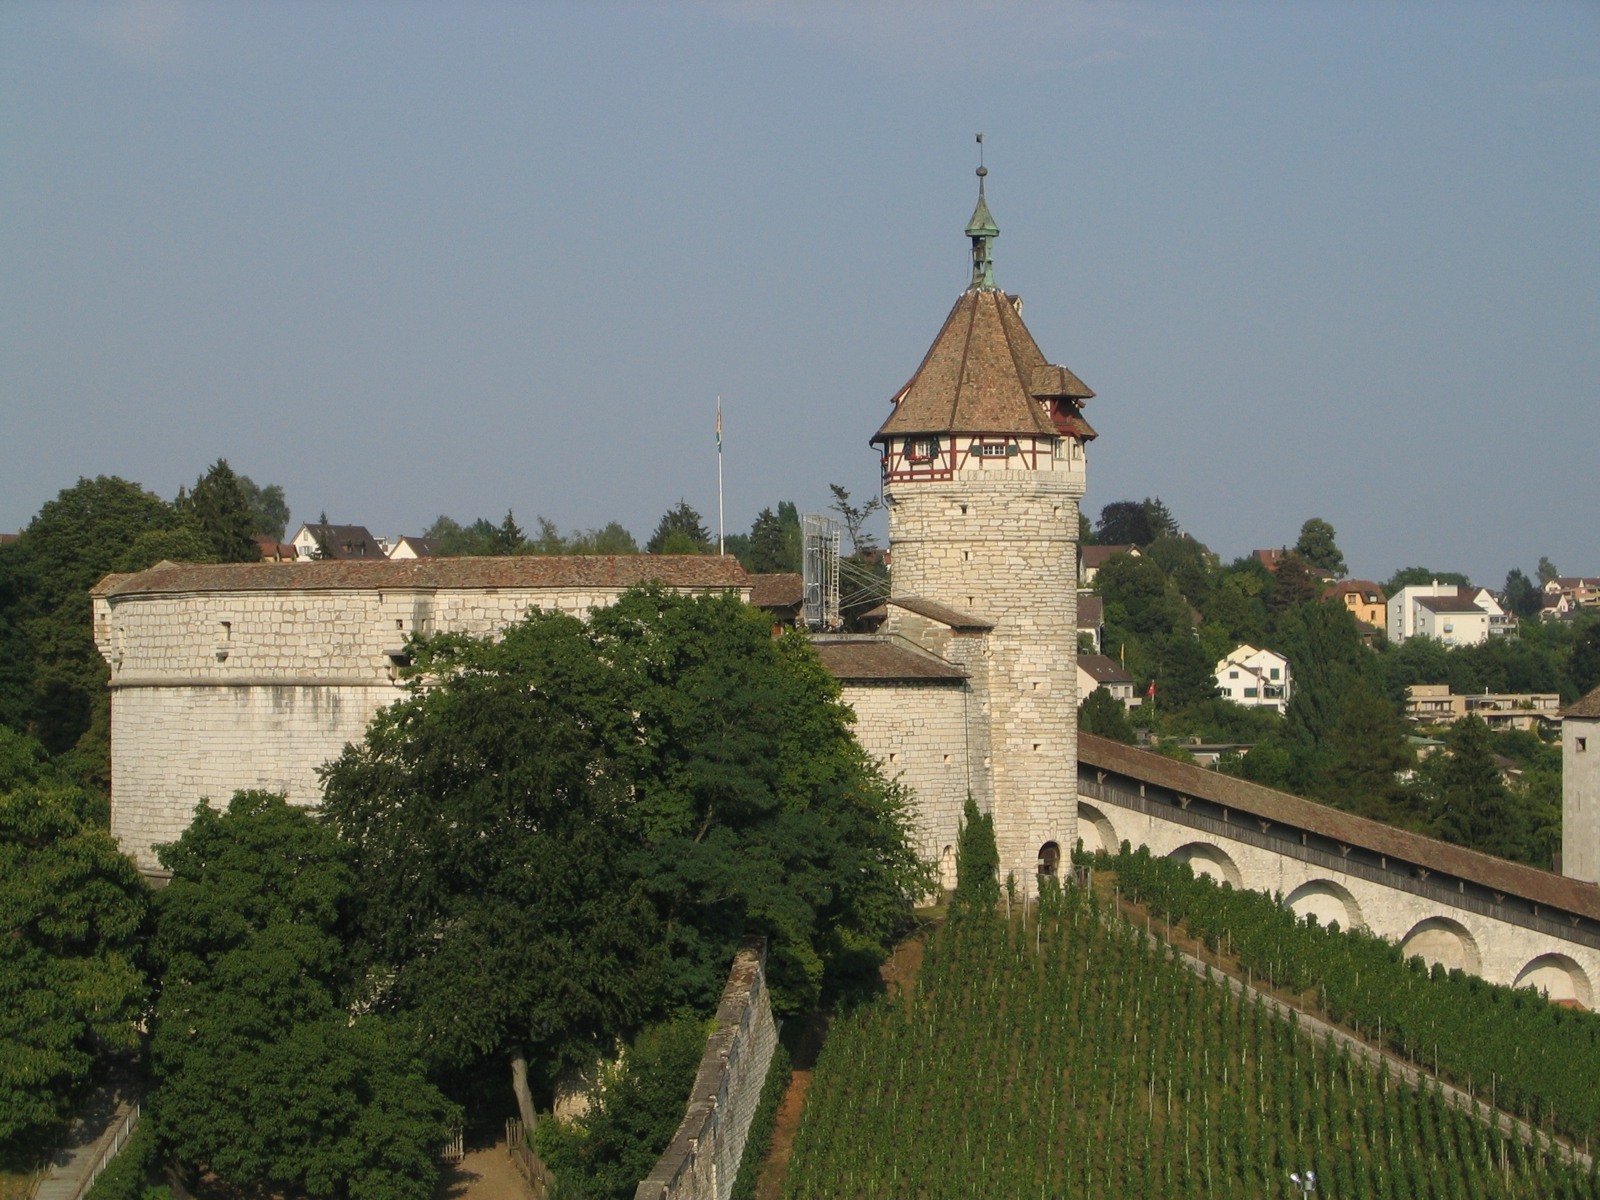  Festung Munot in Schaffhausen 